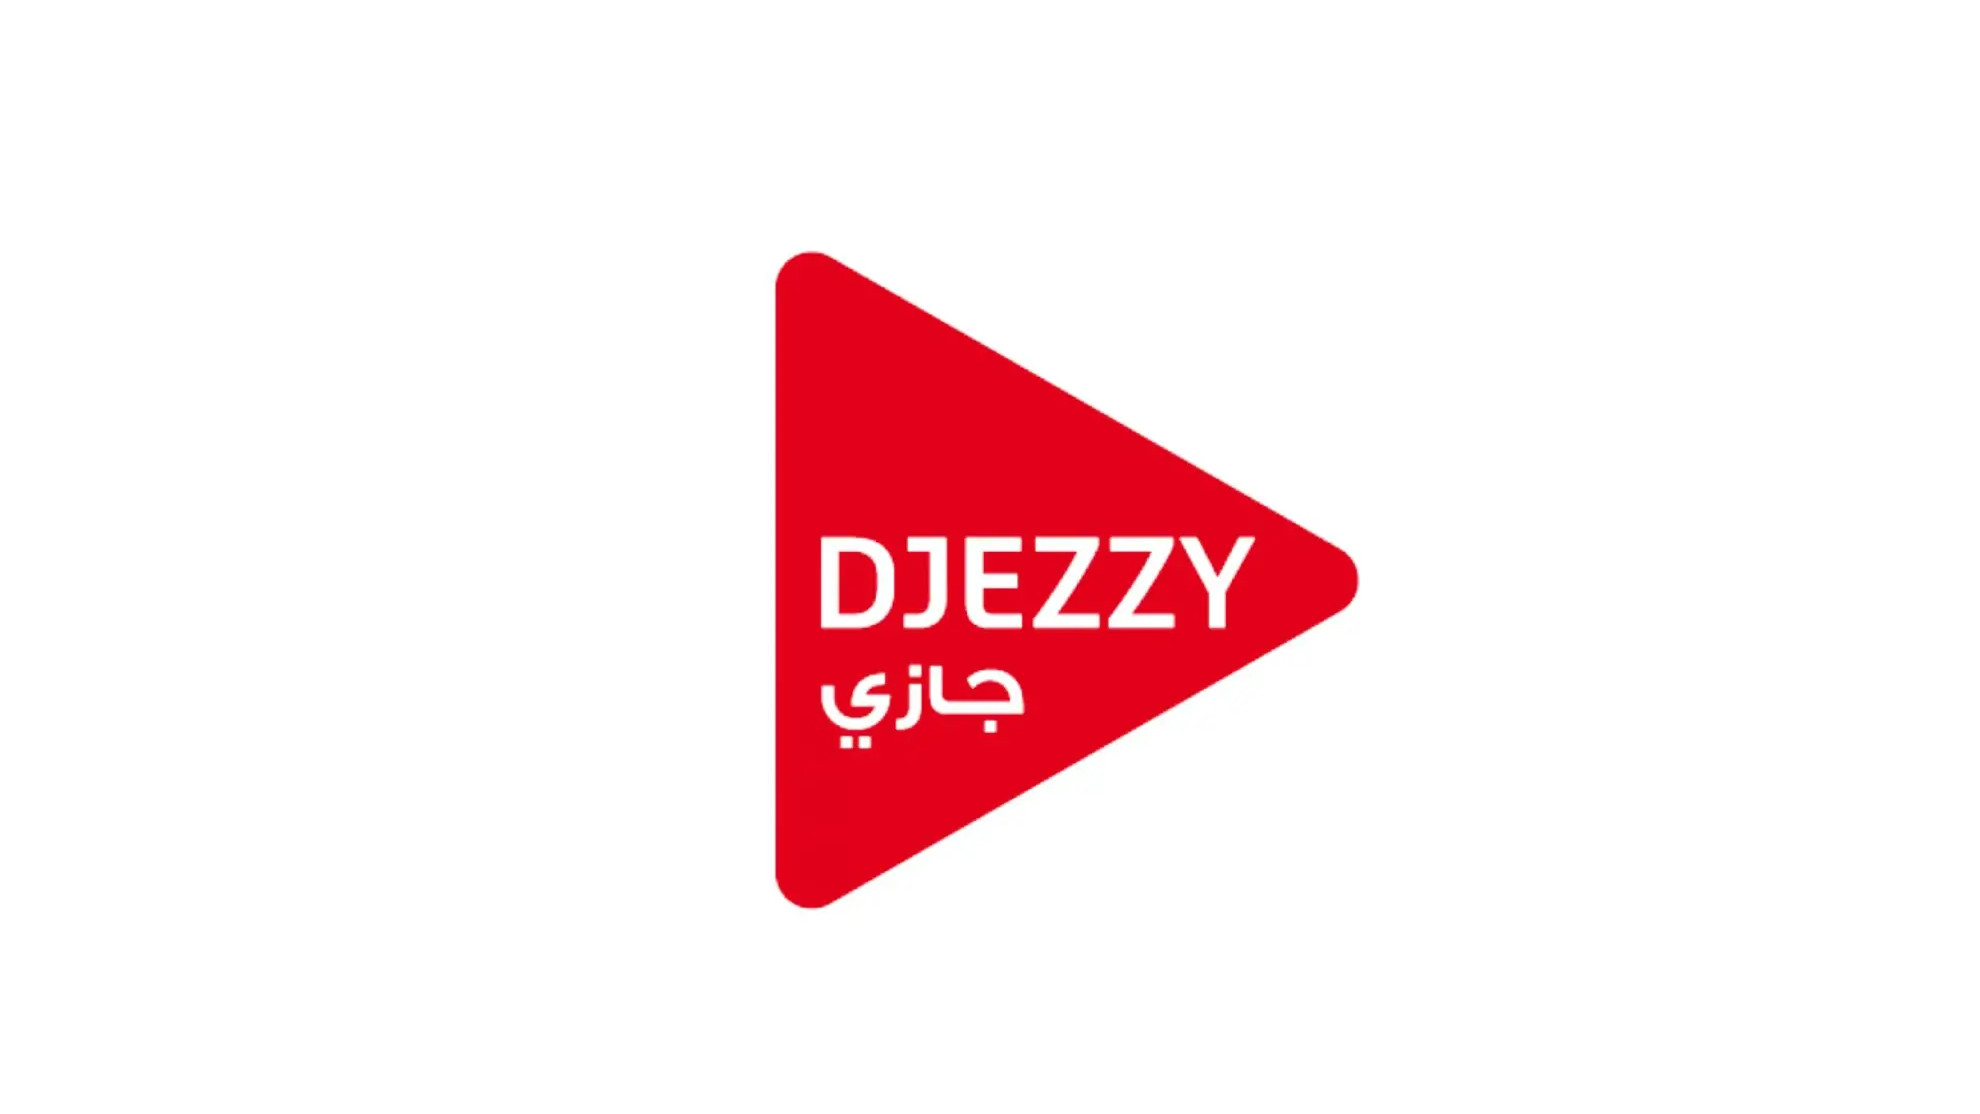 Djezzy 100 DZD Mobile Top-up DZ 1.36 usd